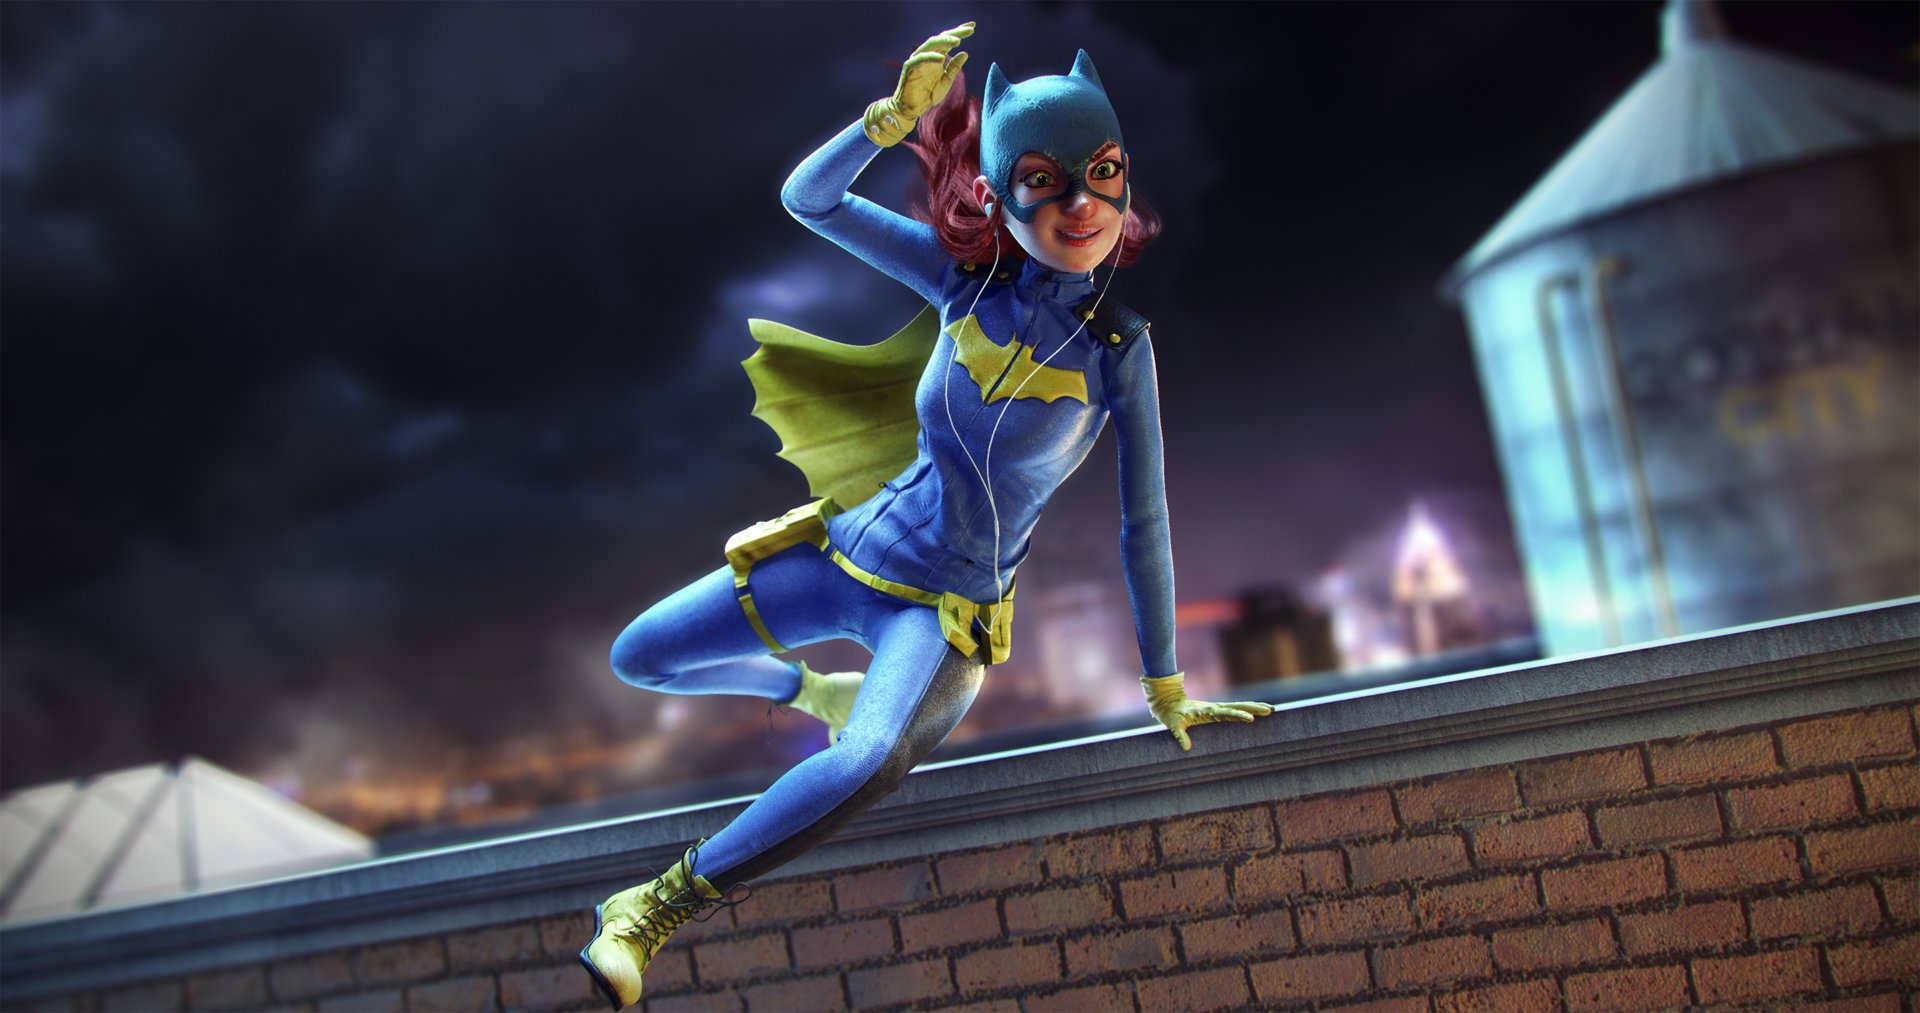 Wallpaper Dc comics, Batgirl jump, art